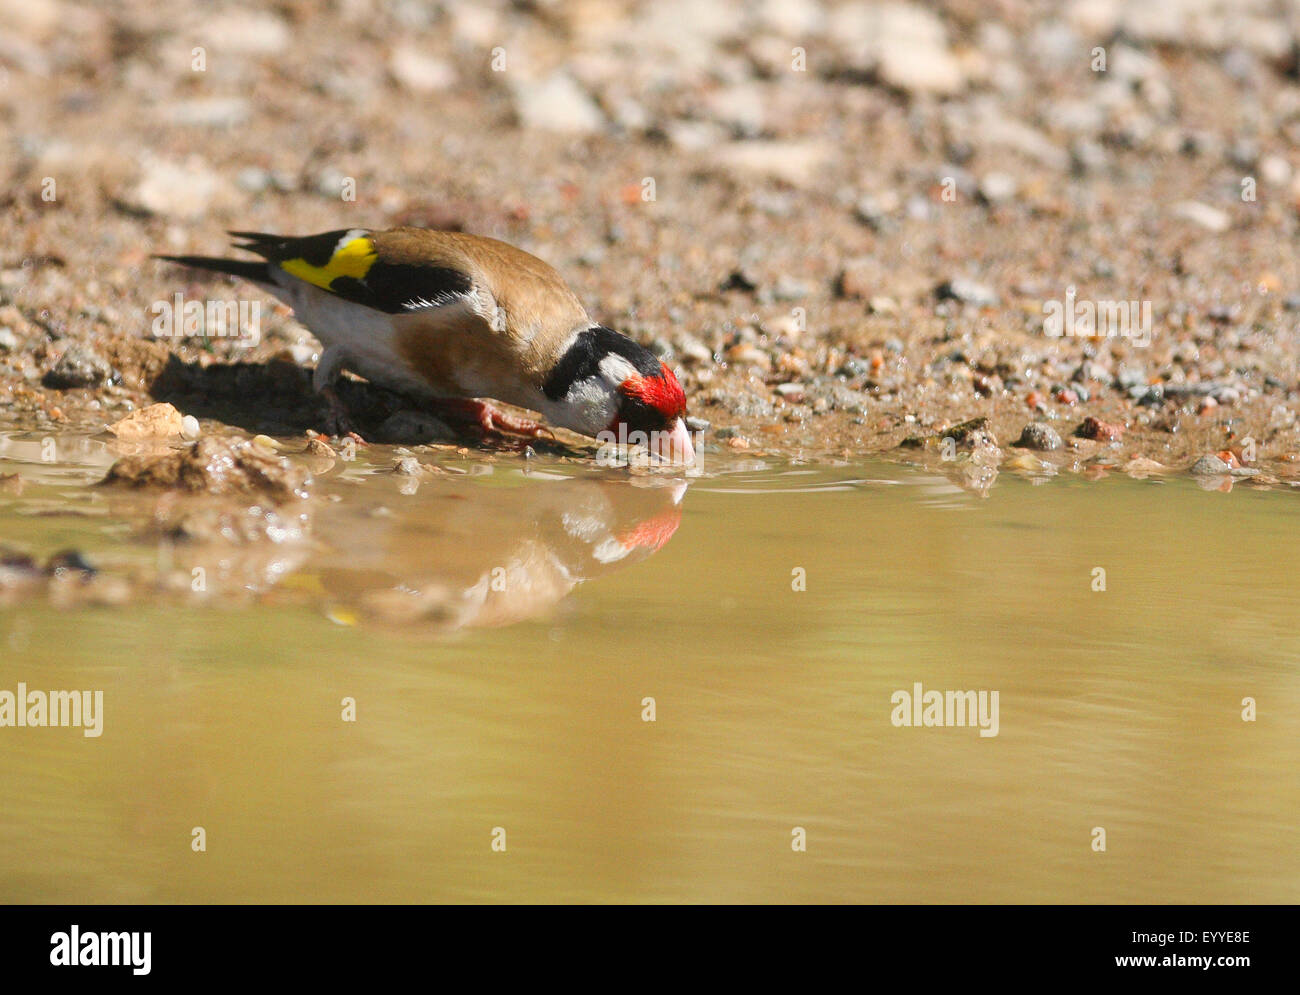 Eurasian goldfinch (Carduelis carduelis), boire de l'eau à l'endroit, Allemagne Banque D'Images